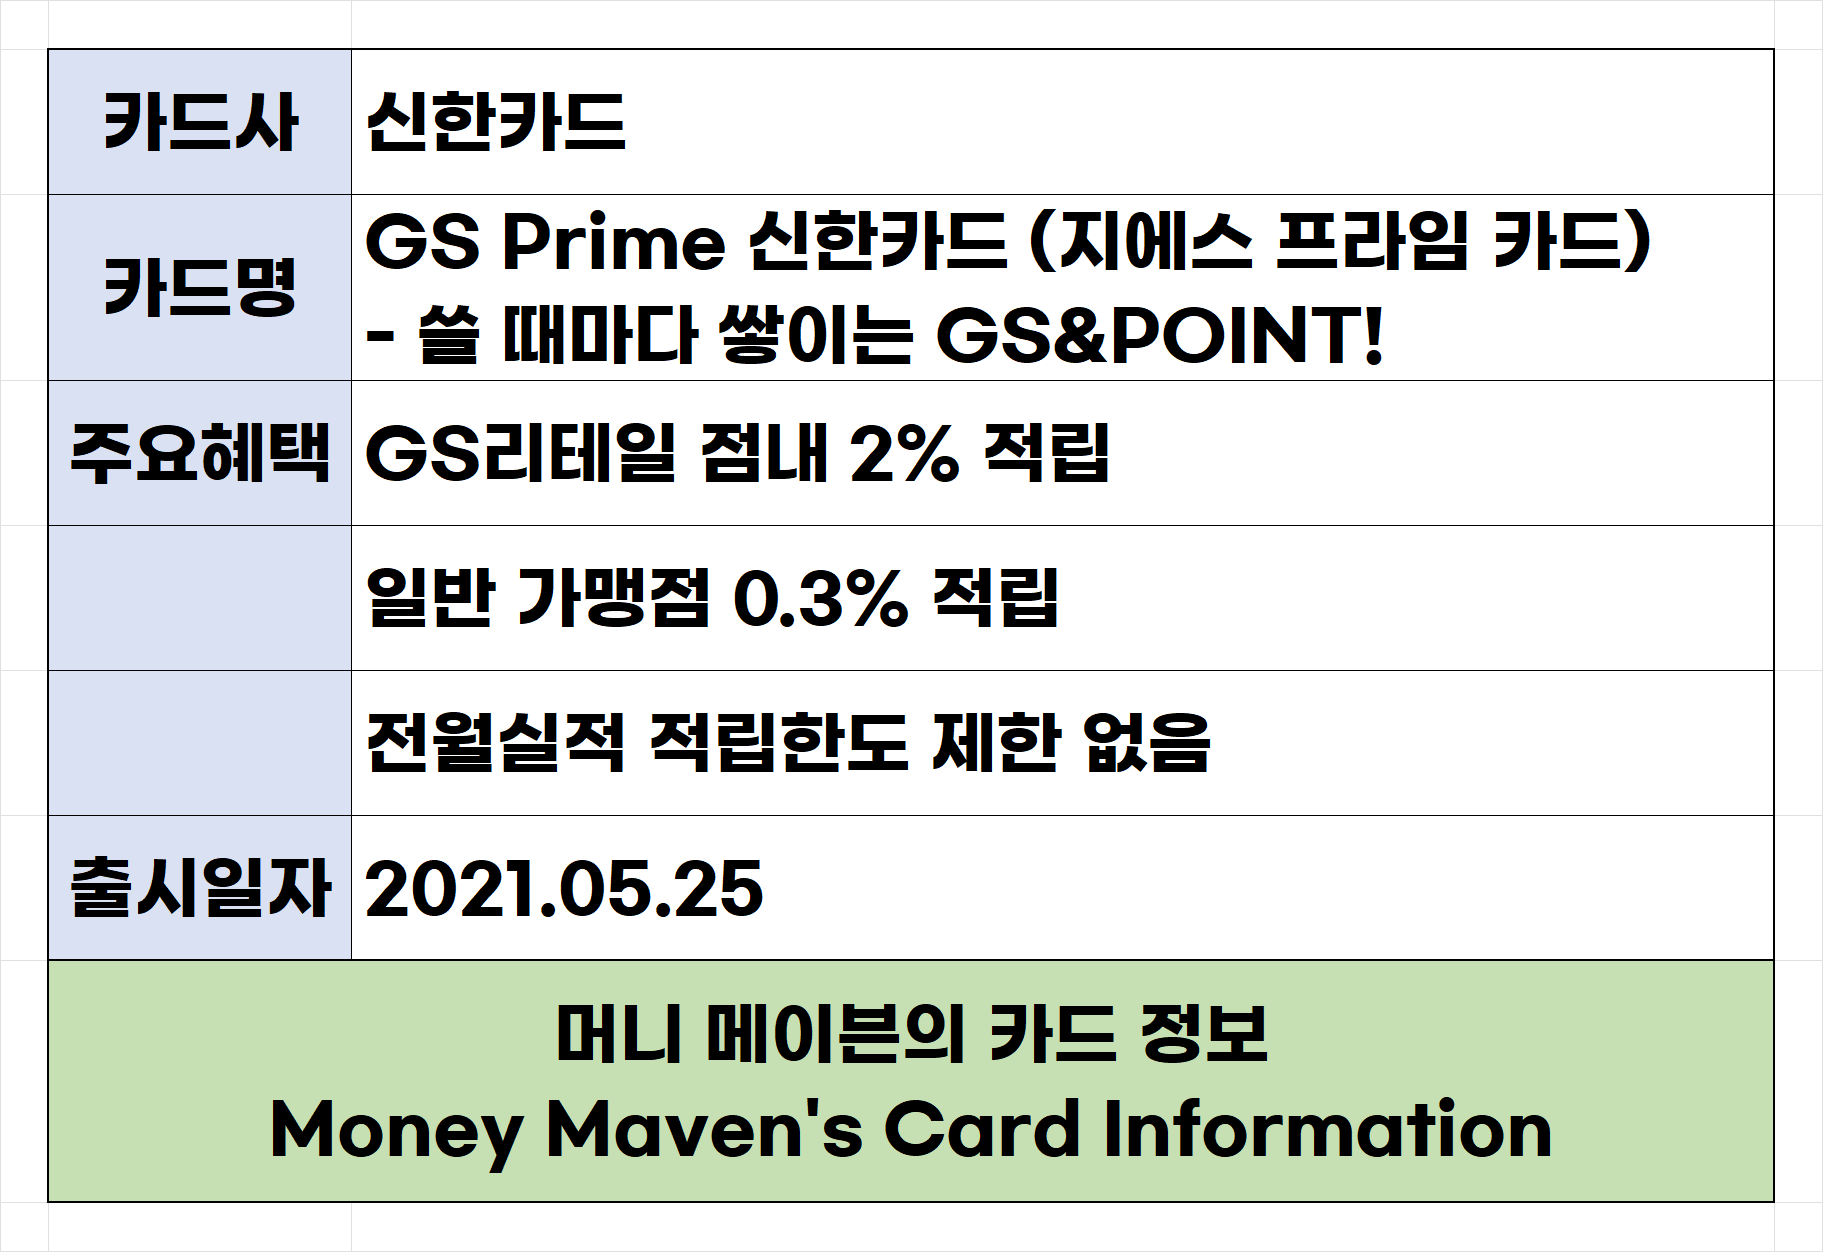 신한카드 GS Prime 신한카드 (지에스 프라임 카드) 주요 혜택